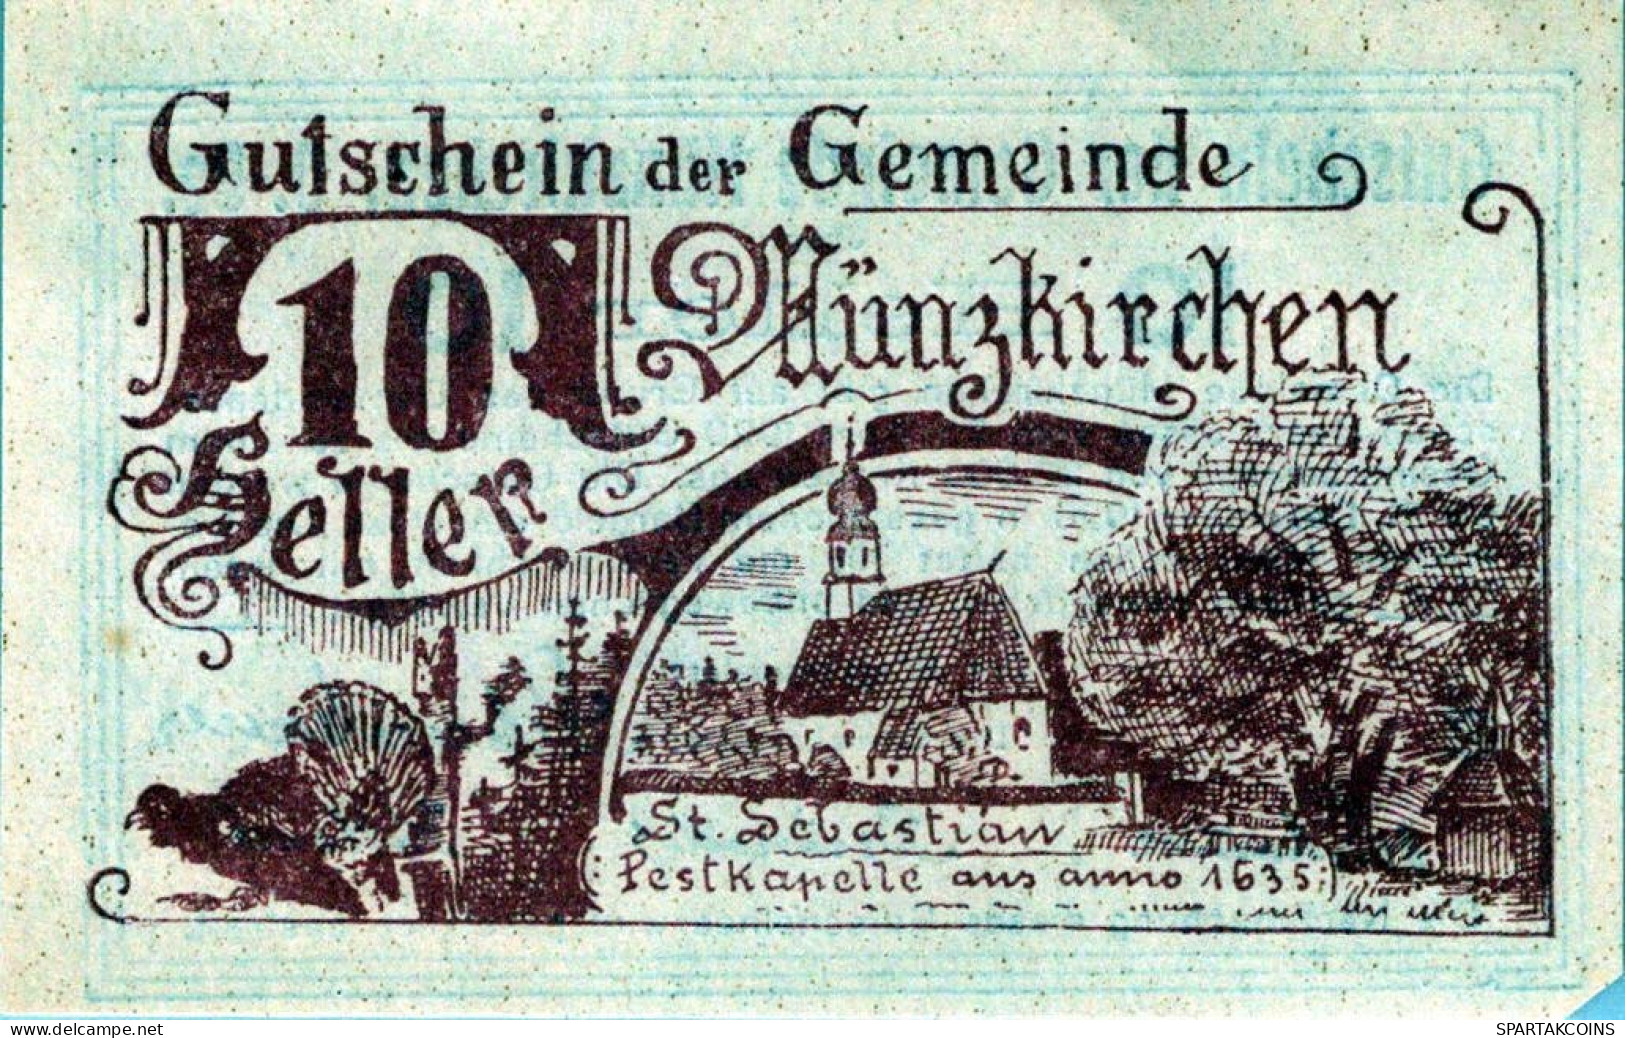 10 HELLER 1920 Stadt Münzkirchen Oberösterreich Österreich Notgeld #PF784 - [11] Emissions Locales